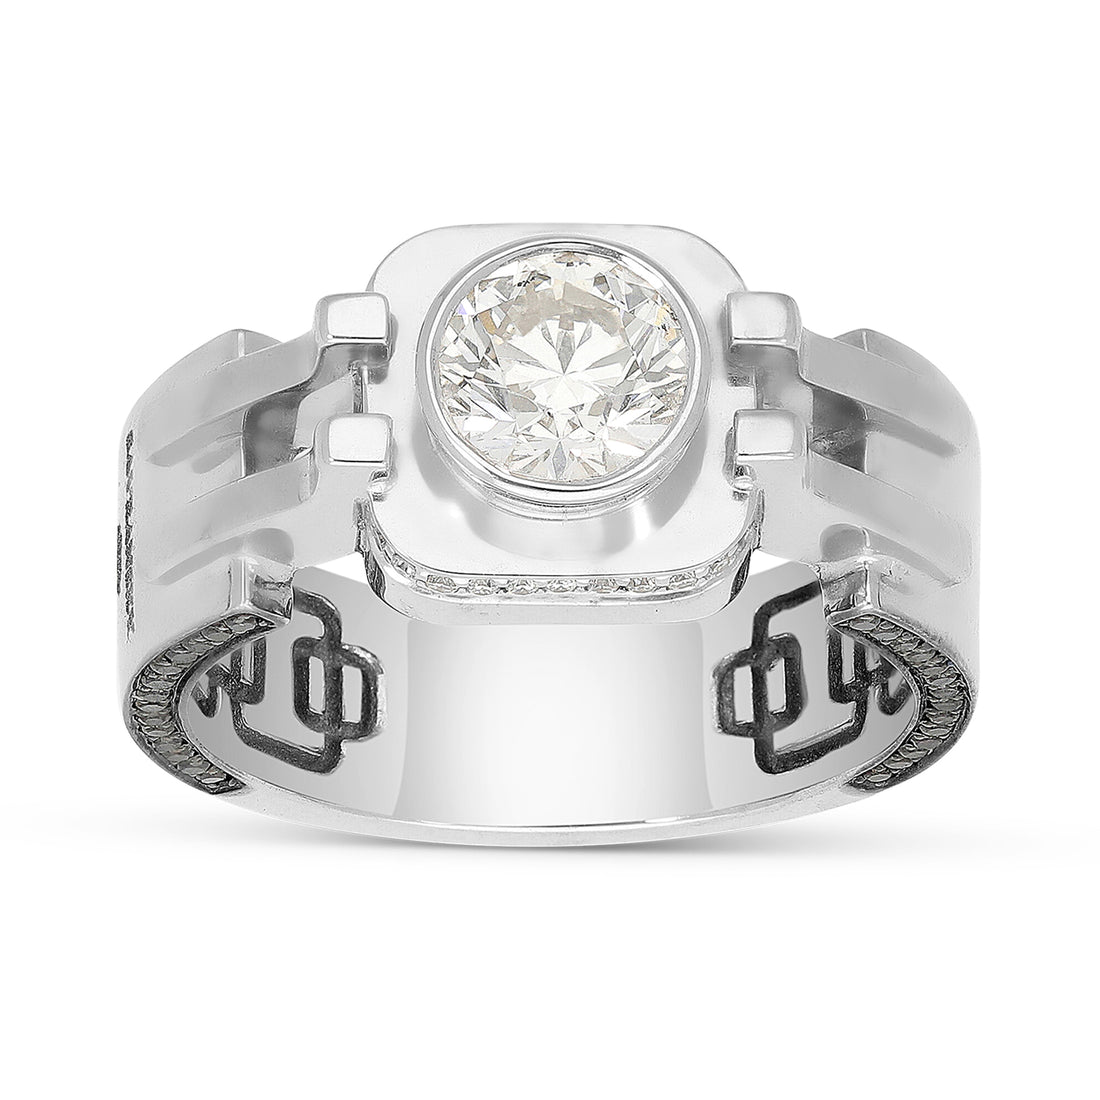 Men's White Diamond Ring - 2.05 Carat